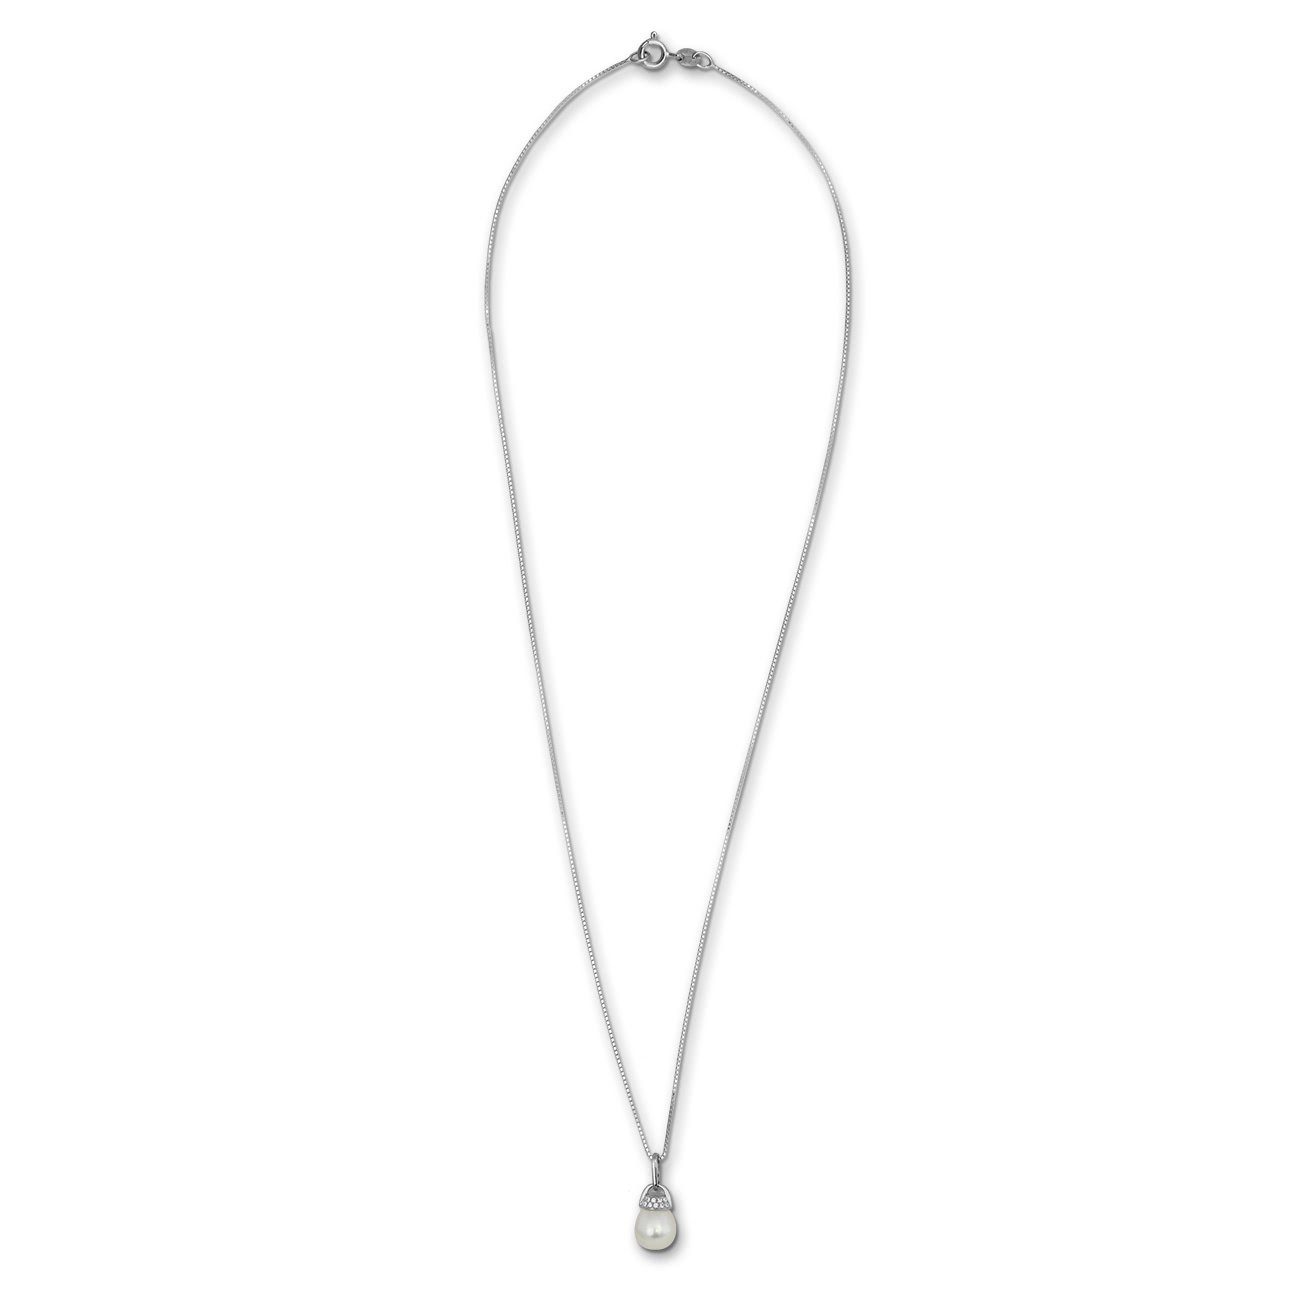 SilberDream Farbe: Damen, Silber, Halsketten weiß Halskette Sterling silber SilberDream silber, ca. Silberkette 925 weiß 45cm,